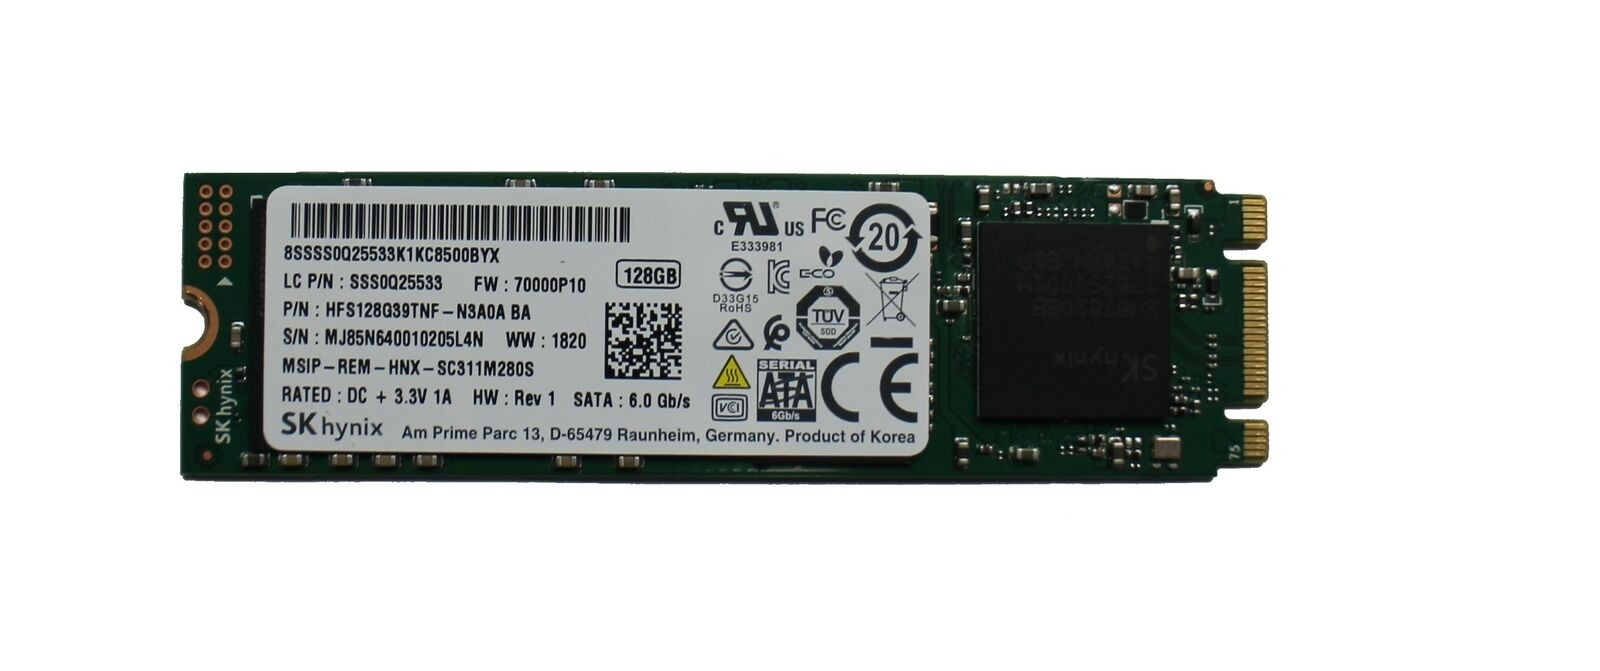 SK Hynix m.2 128gb SSD hfs128g39tnf sc311m280s 3,3v 1a 80mm 